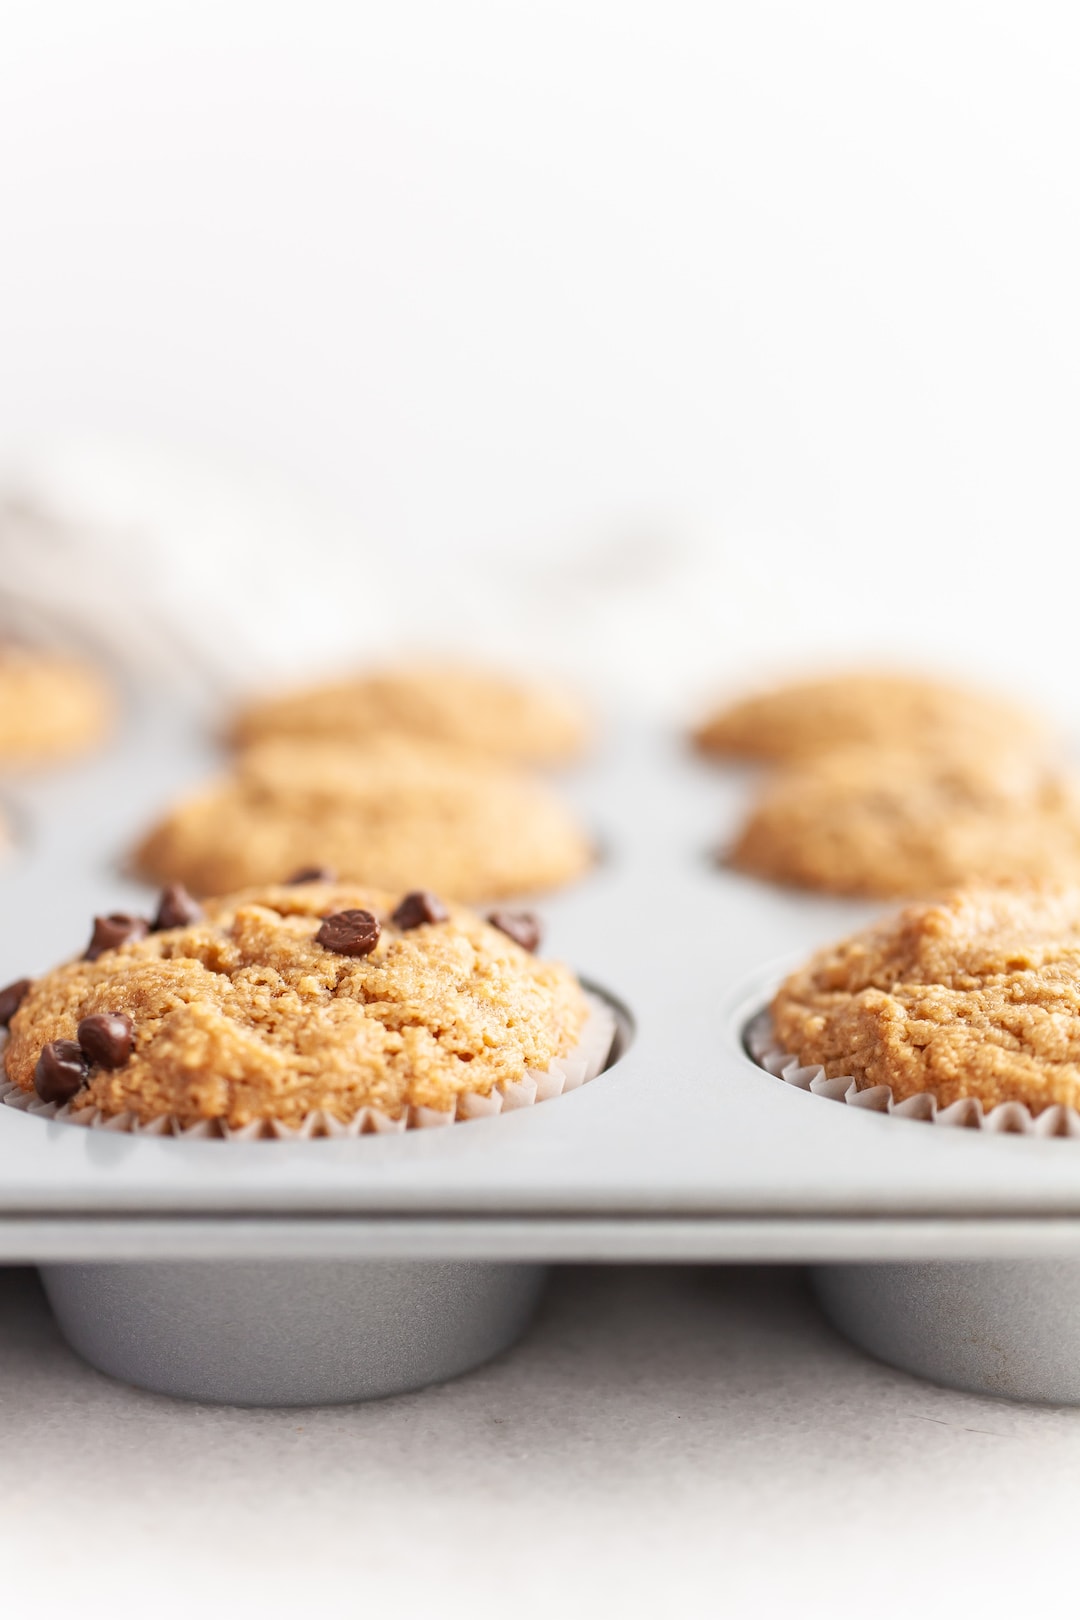 17 Low FODMAP Breakfast Ideas - Almond Flour Muffins